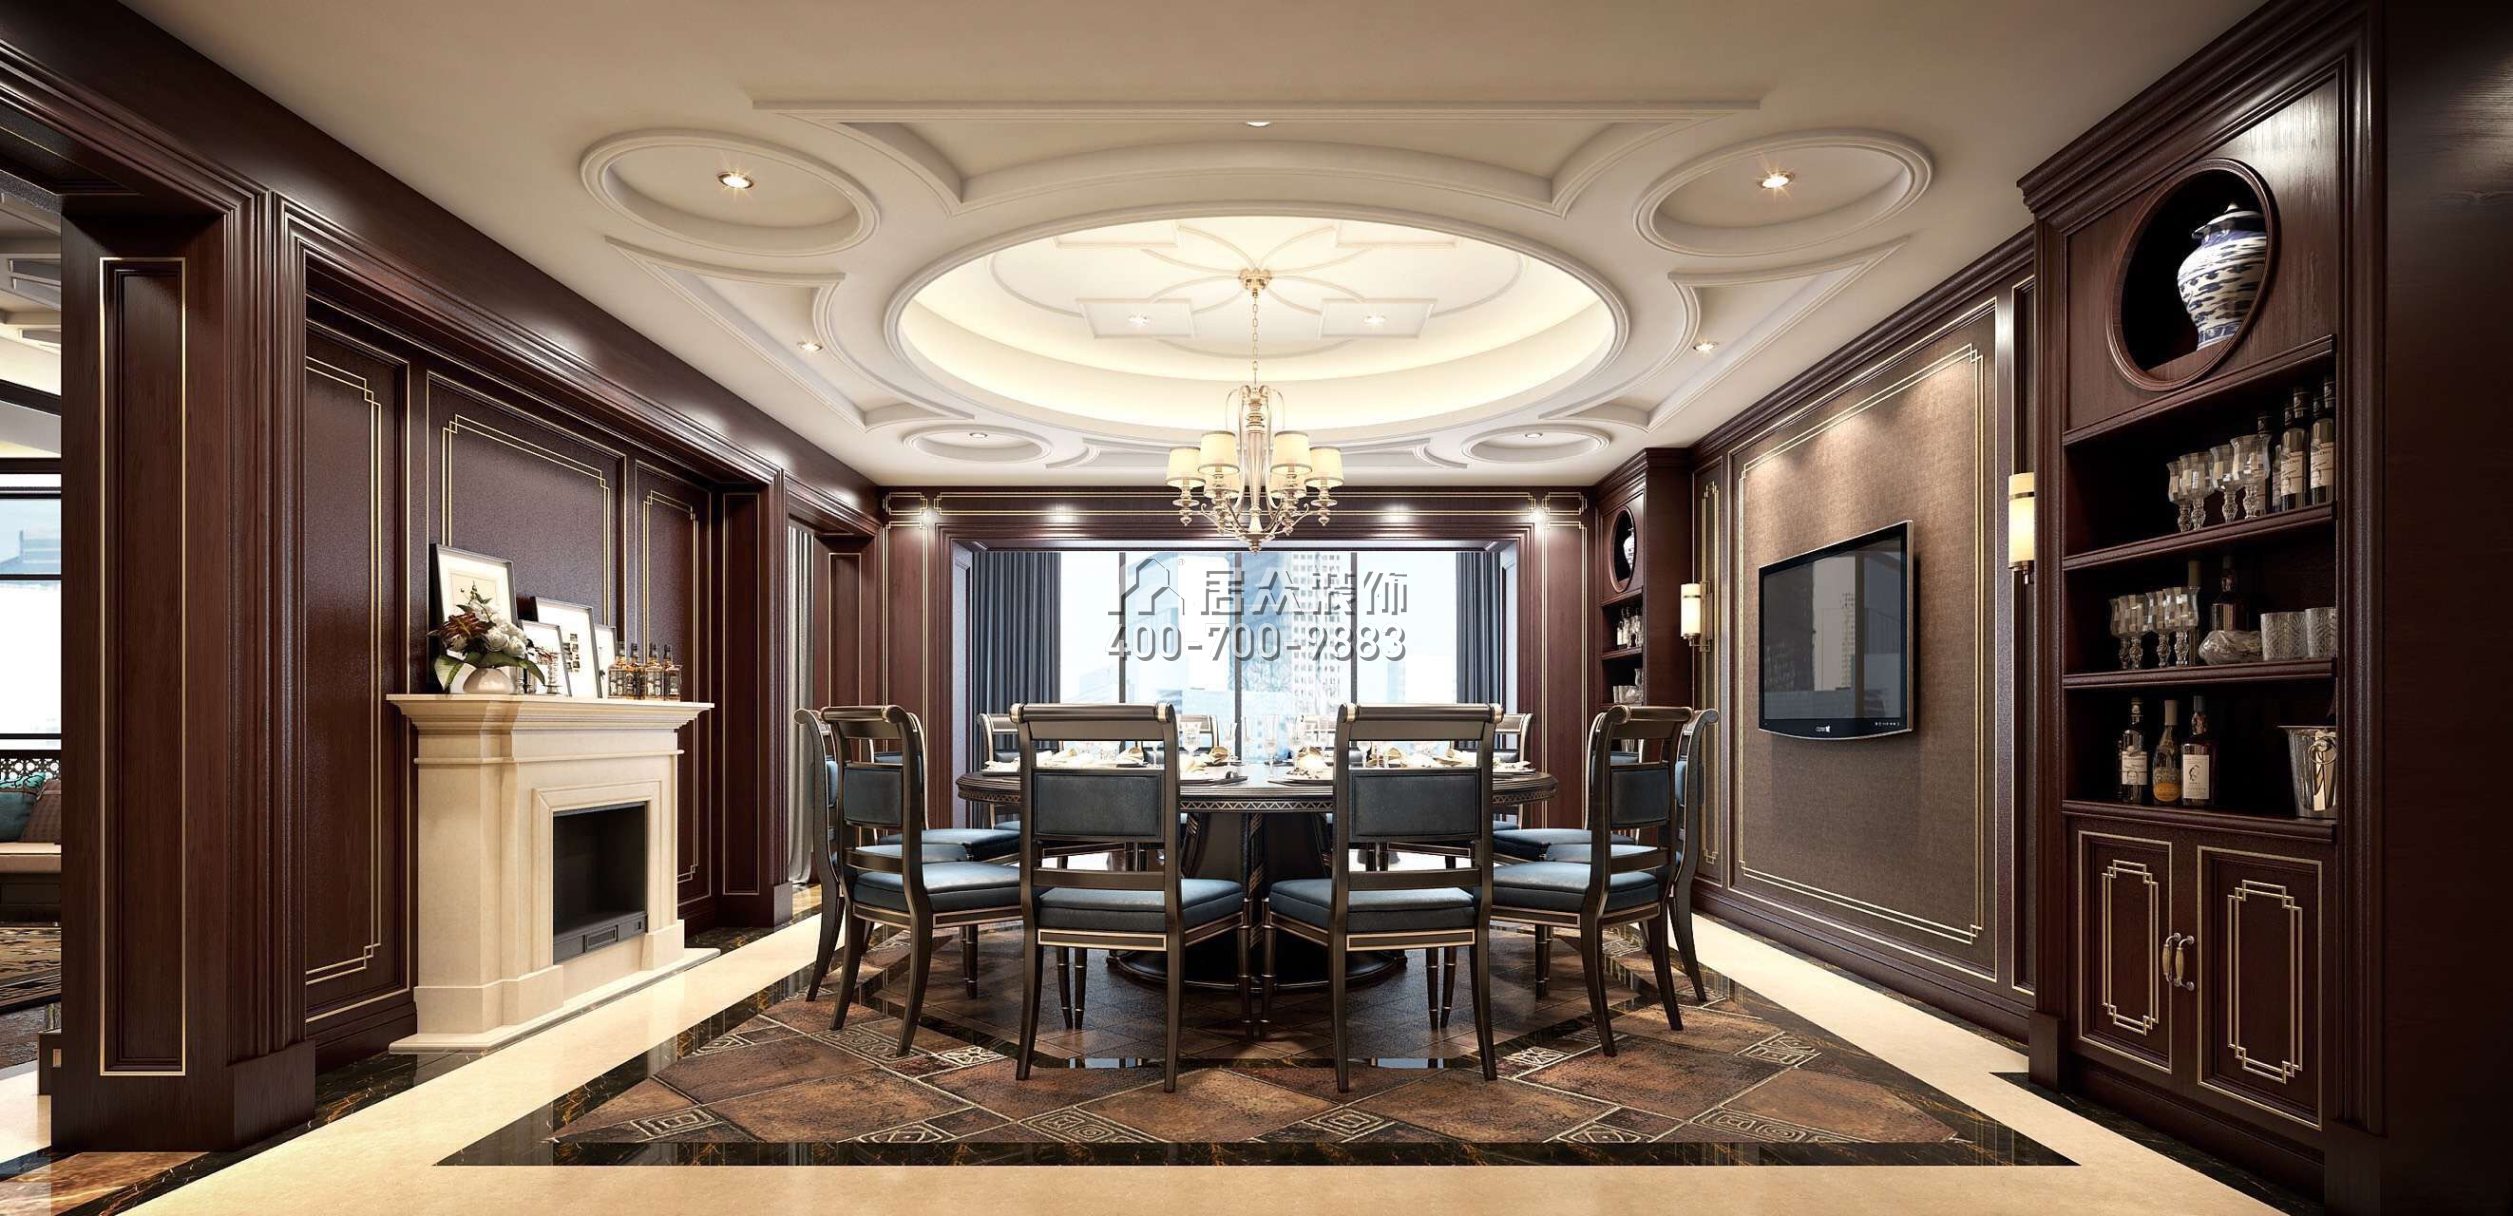 藏龍280平方米美式風格平層戶型餐廳裝修效果圖